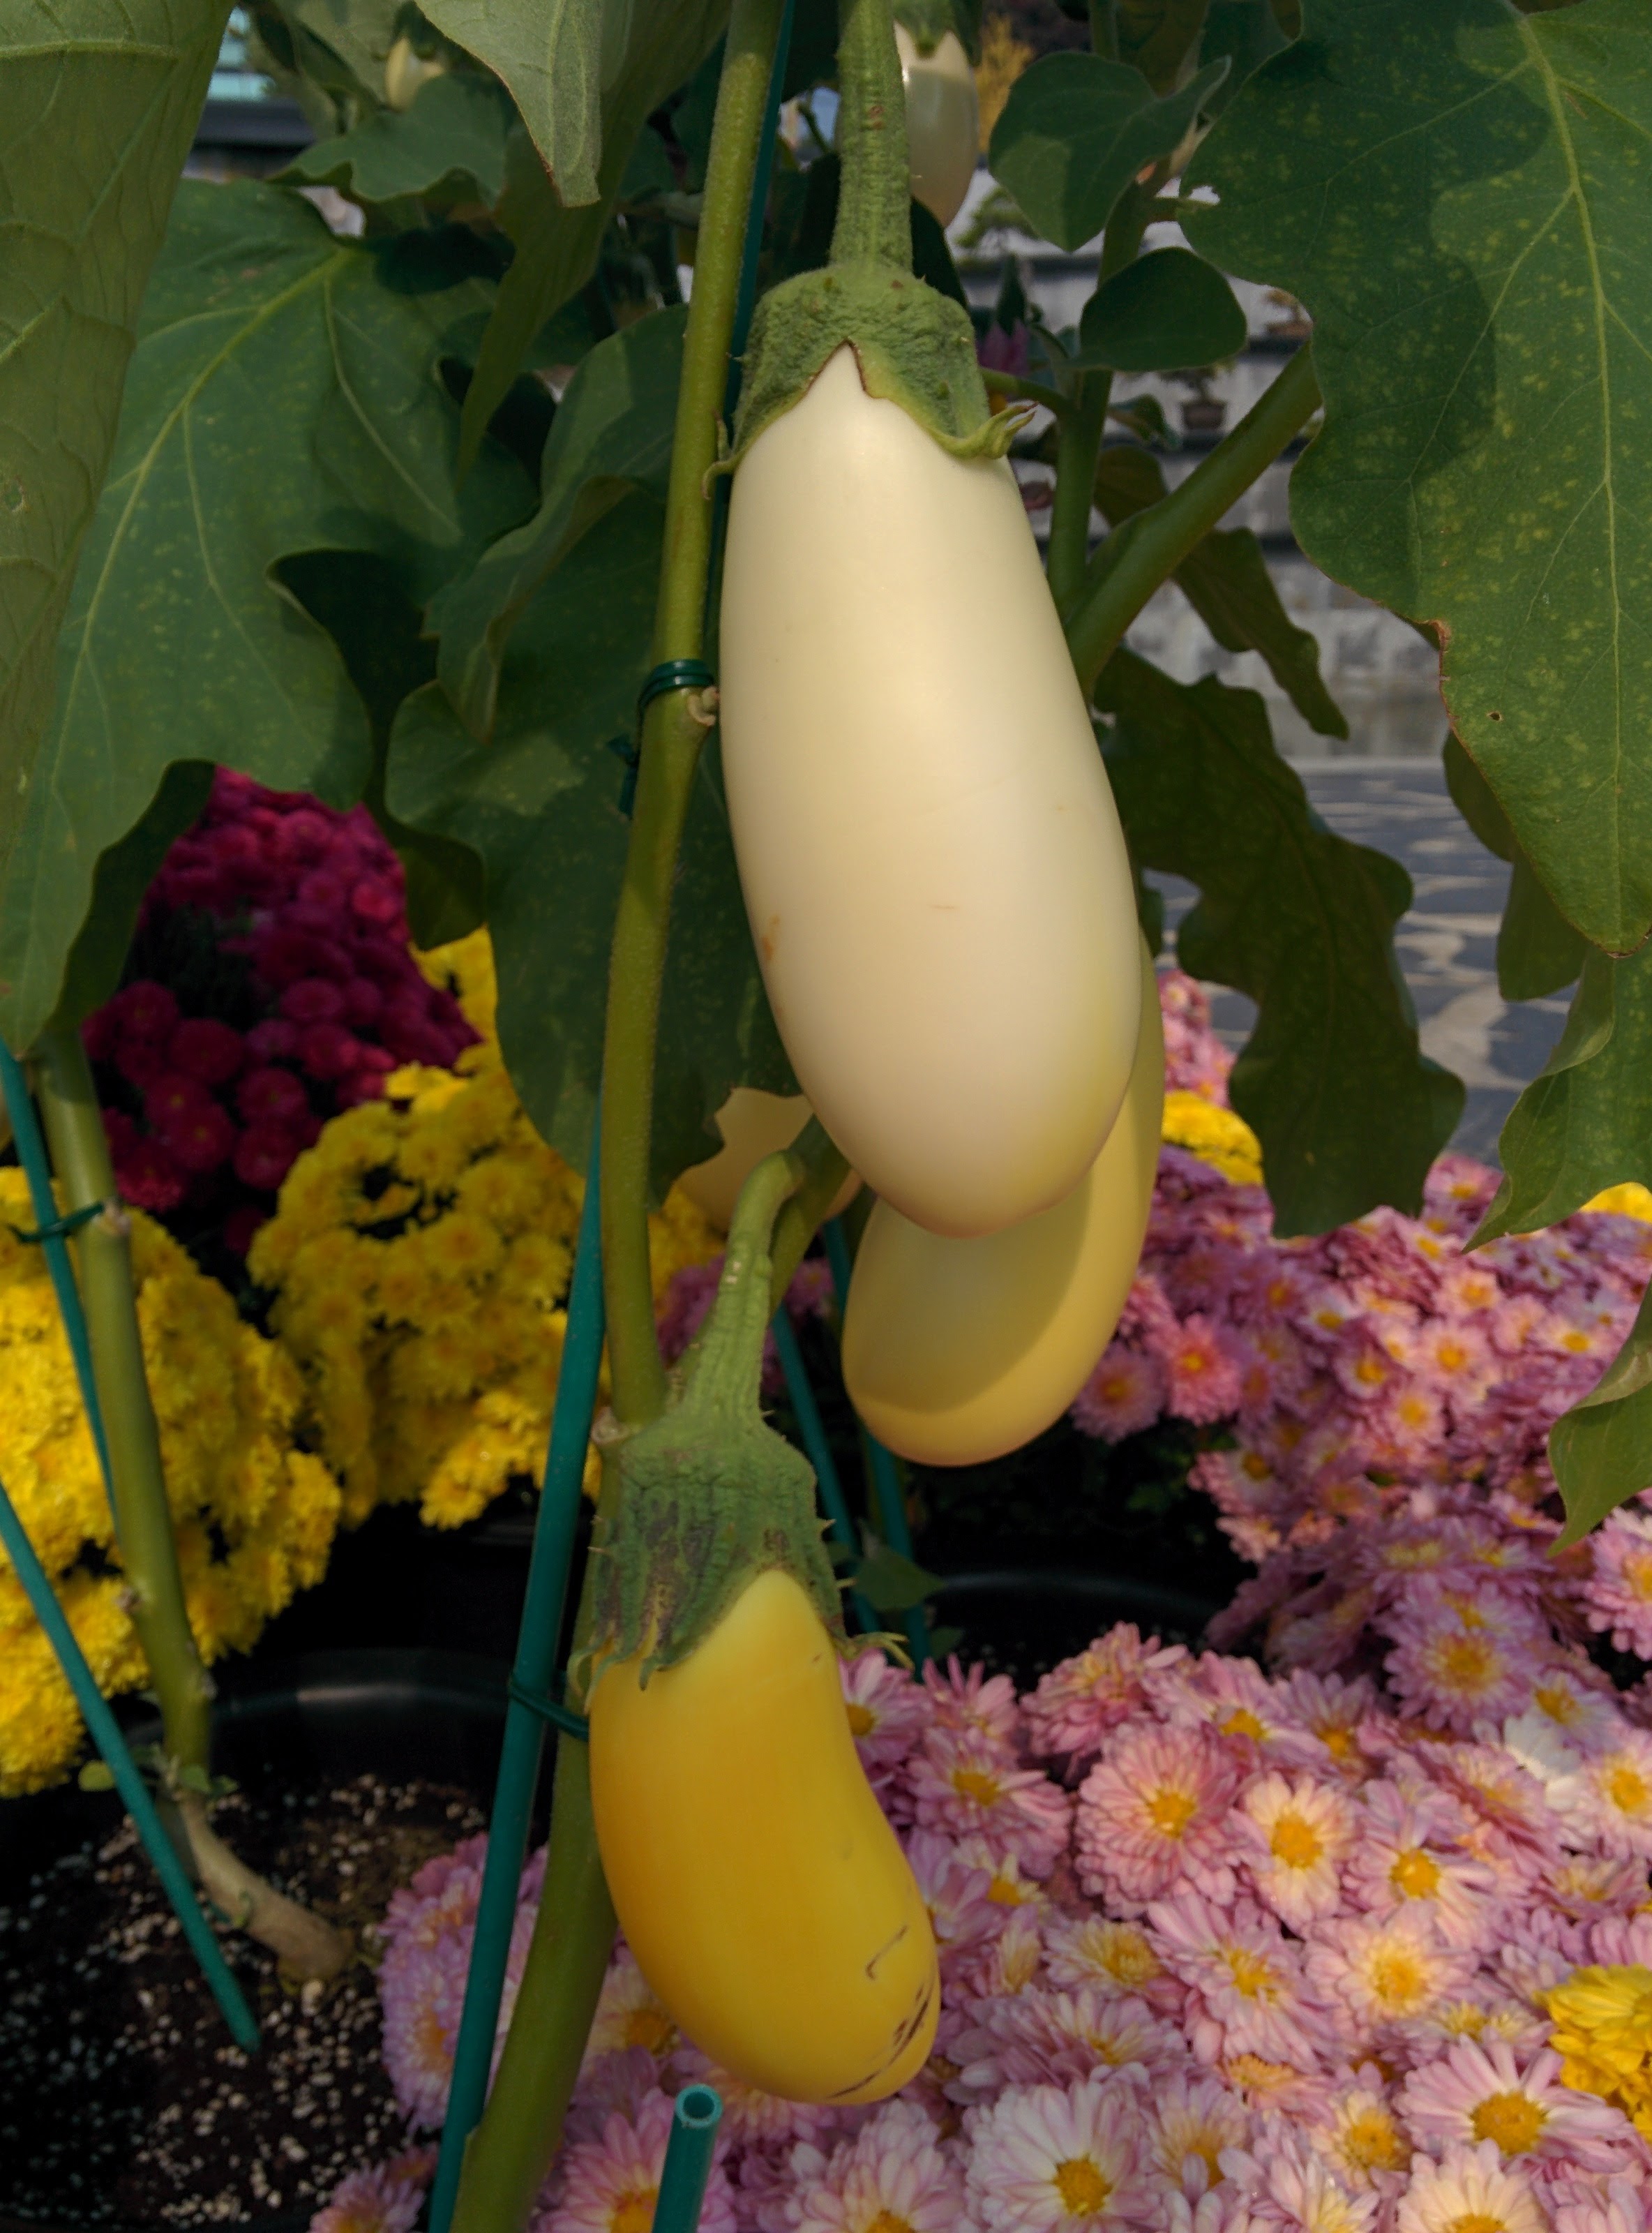 IMG_20151021_112412.jpg 달걀을 닮은 하얀색 노란색 열매 열린 계란가지, 연보라색 꽃